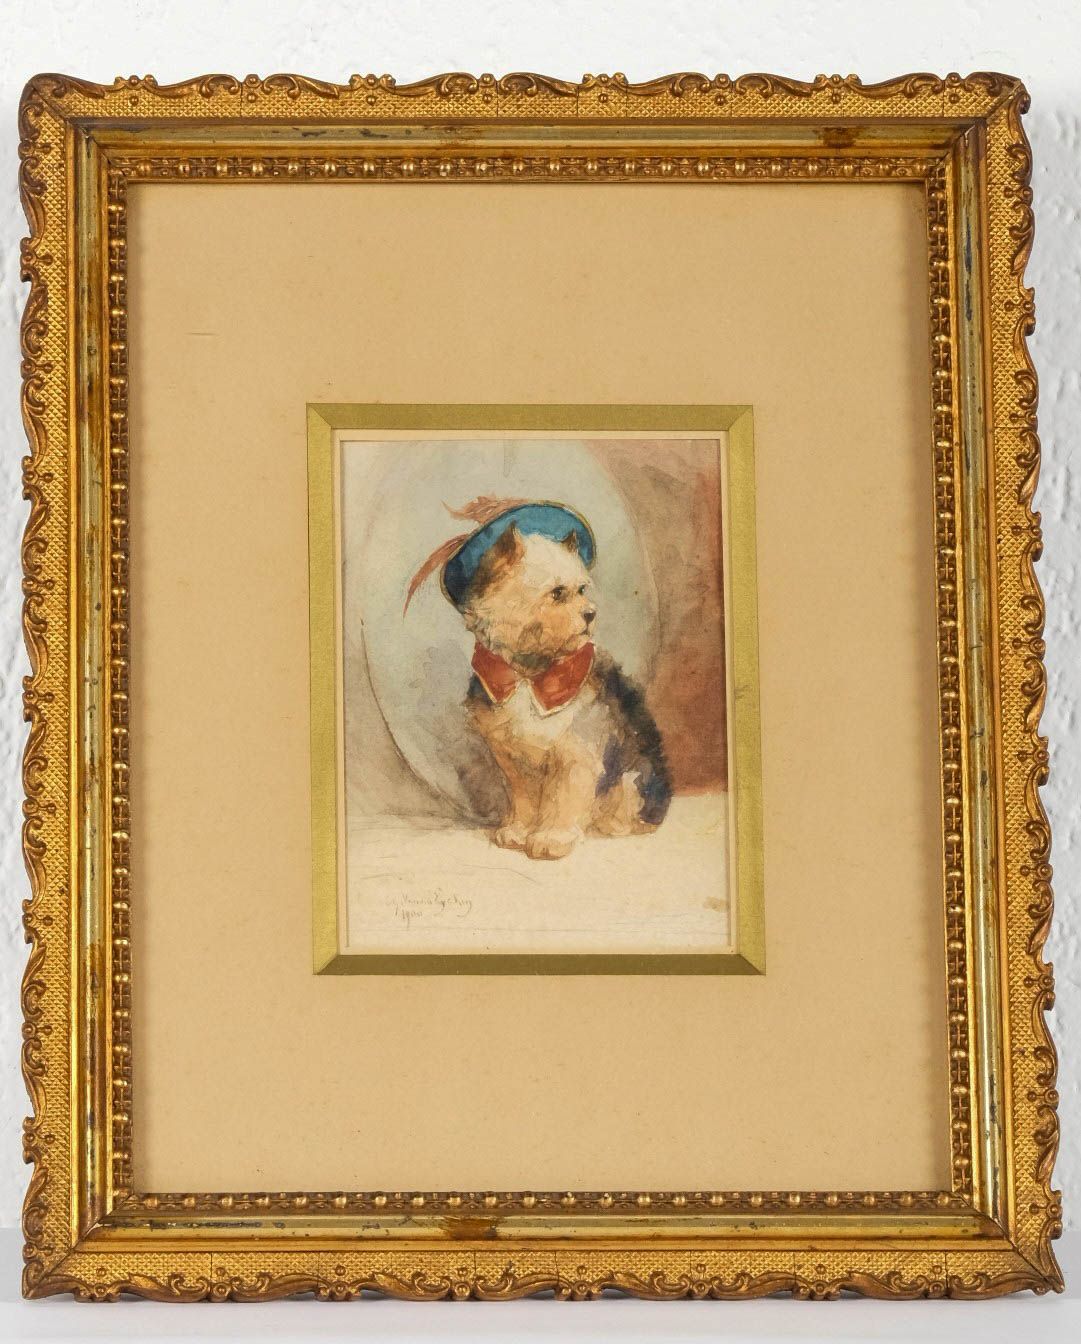 Charles II VAN DEN EYCKEN (1859-1923) 
Yorkshire, 13 X 9 cm.